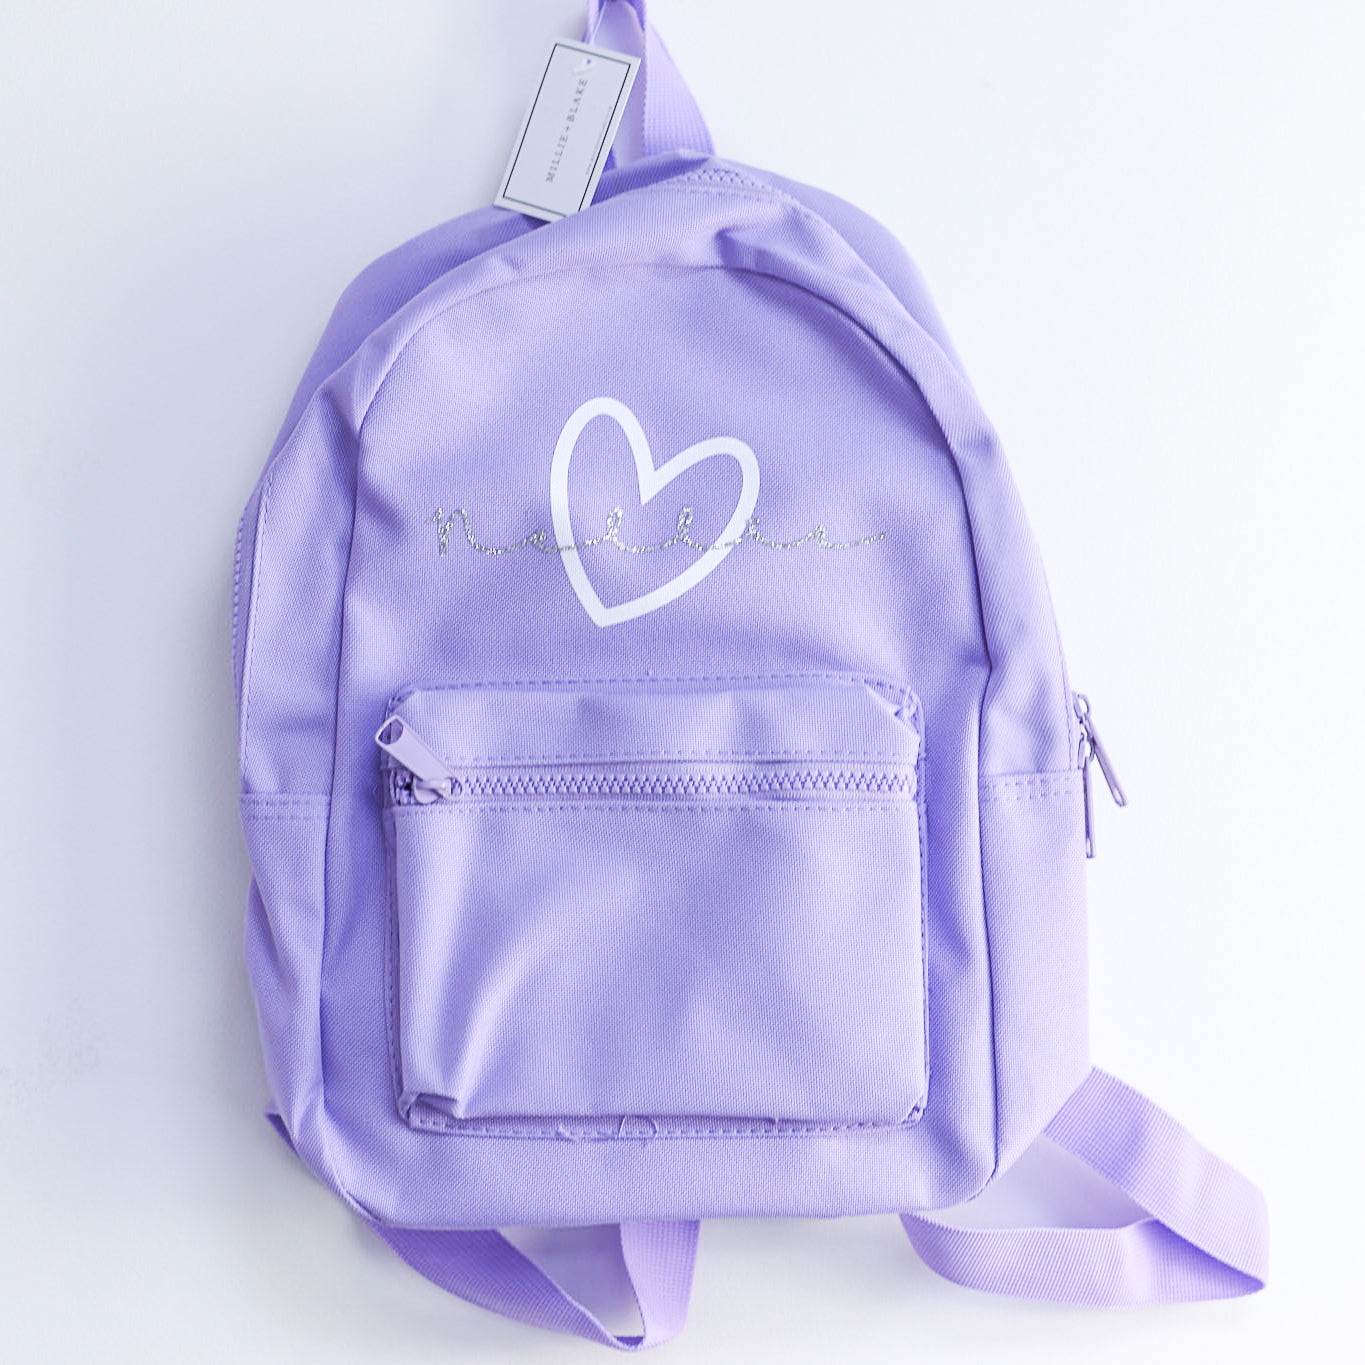 Marie Heart Mini Essentials Backpack